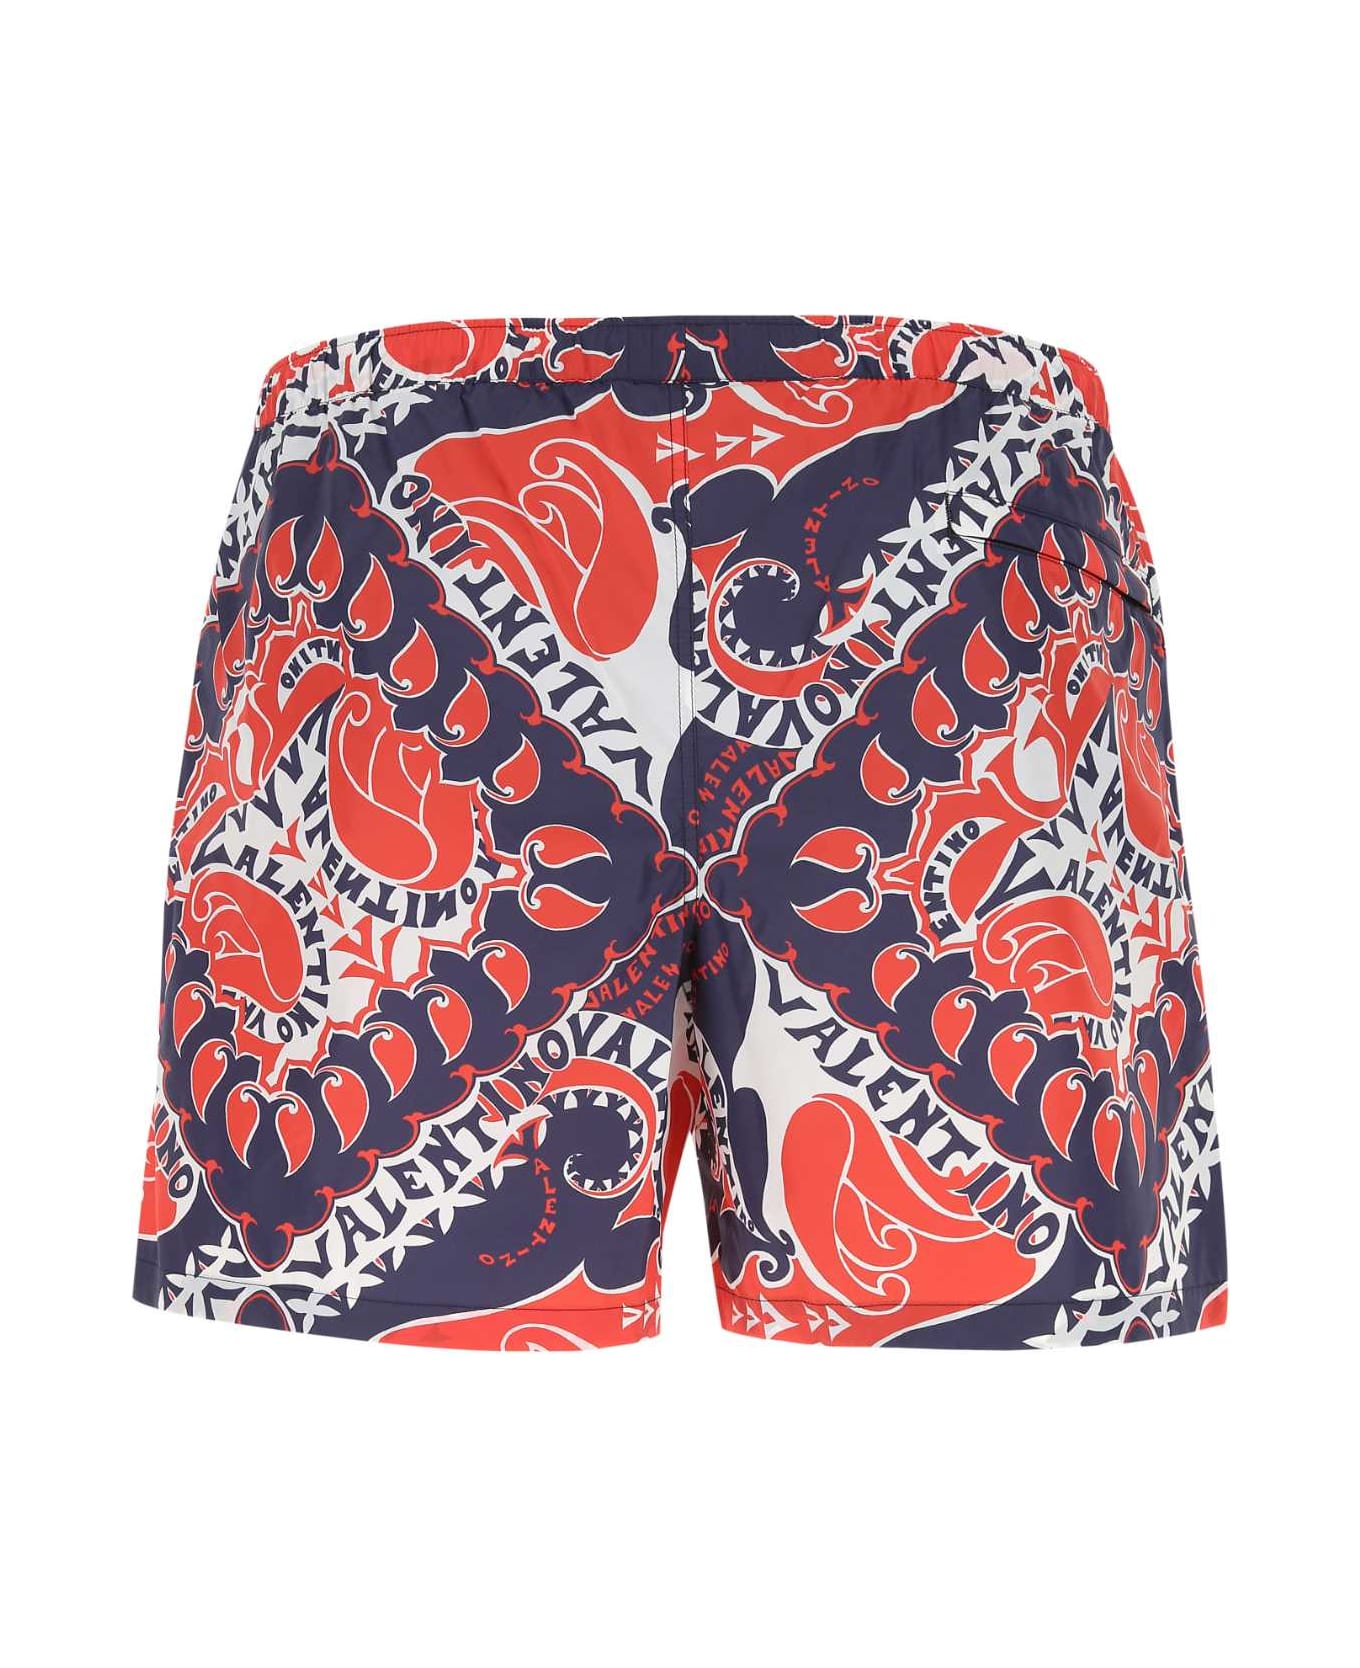 Valentino Garavani Printed Nylon Swimming Shorts - 7QC